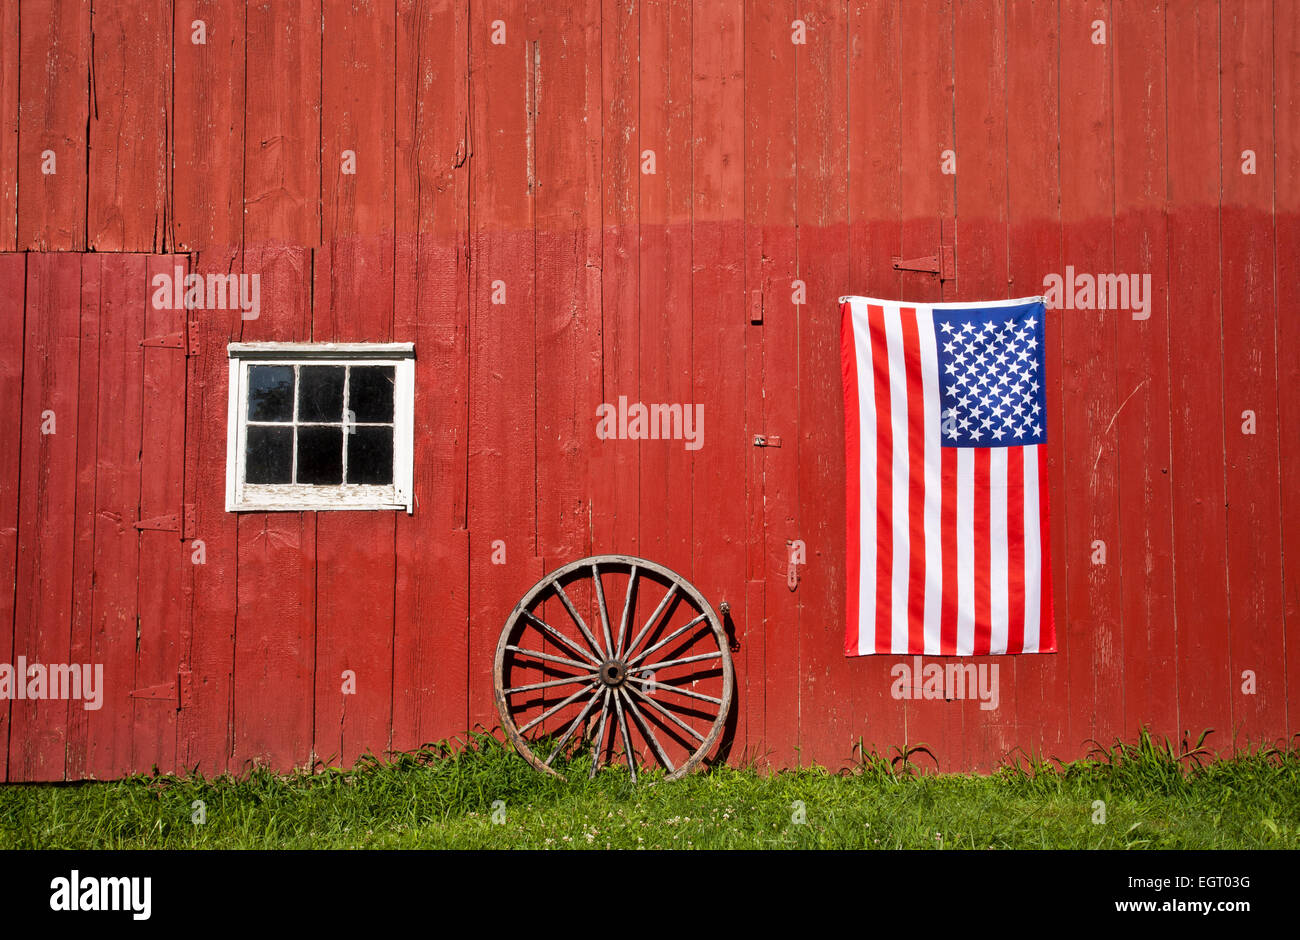 Grange rouge historique, drapeau américain et roue de wagon antique sur une ferme, comté de Middlesex, canton de Monroe, New Jersey, États-Unis, Américain 10,38 Mo, DT août 2013 Banque D'Images